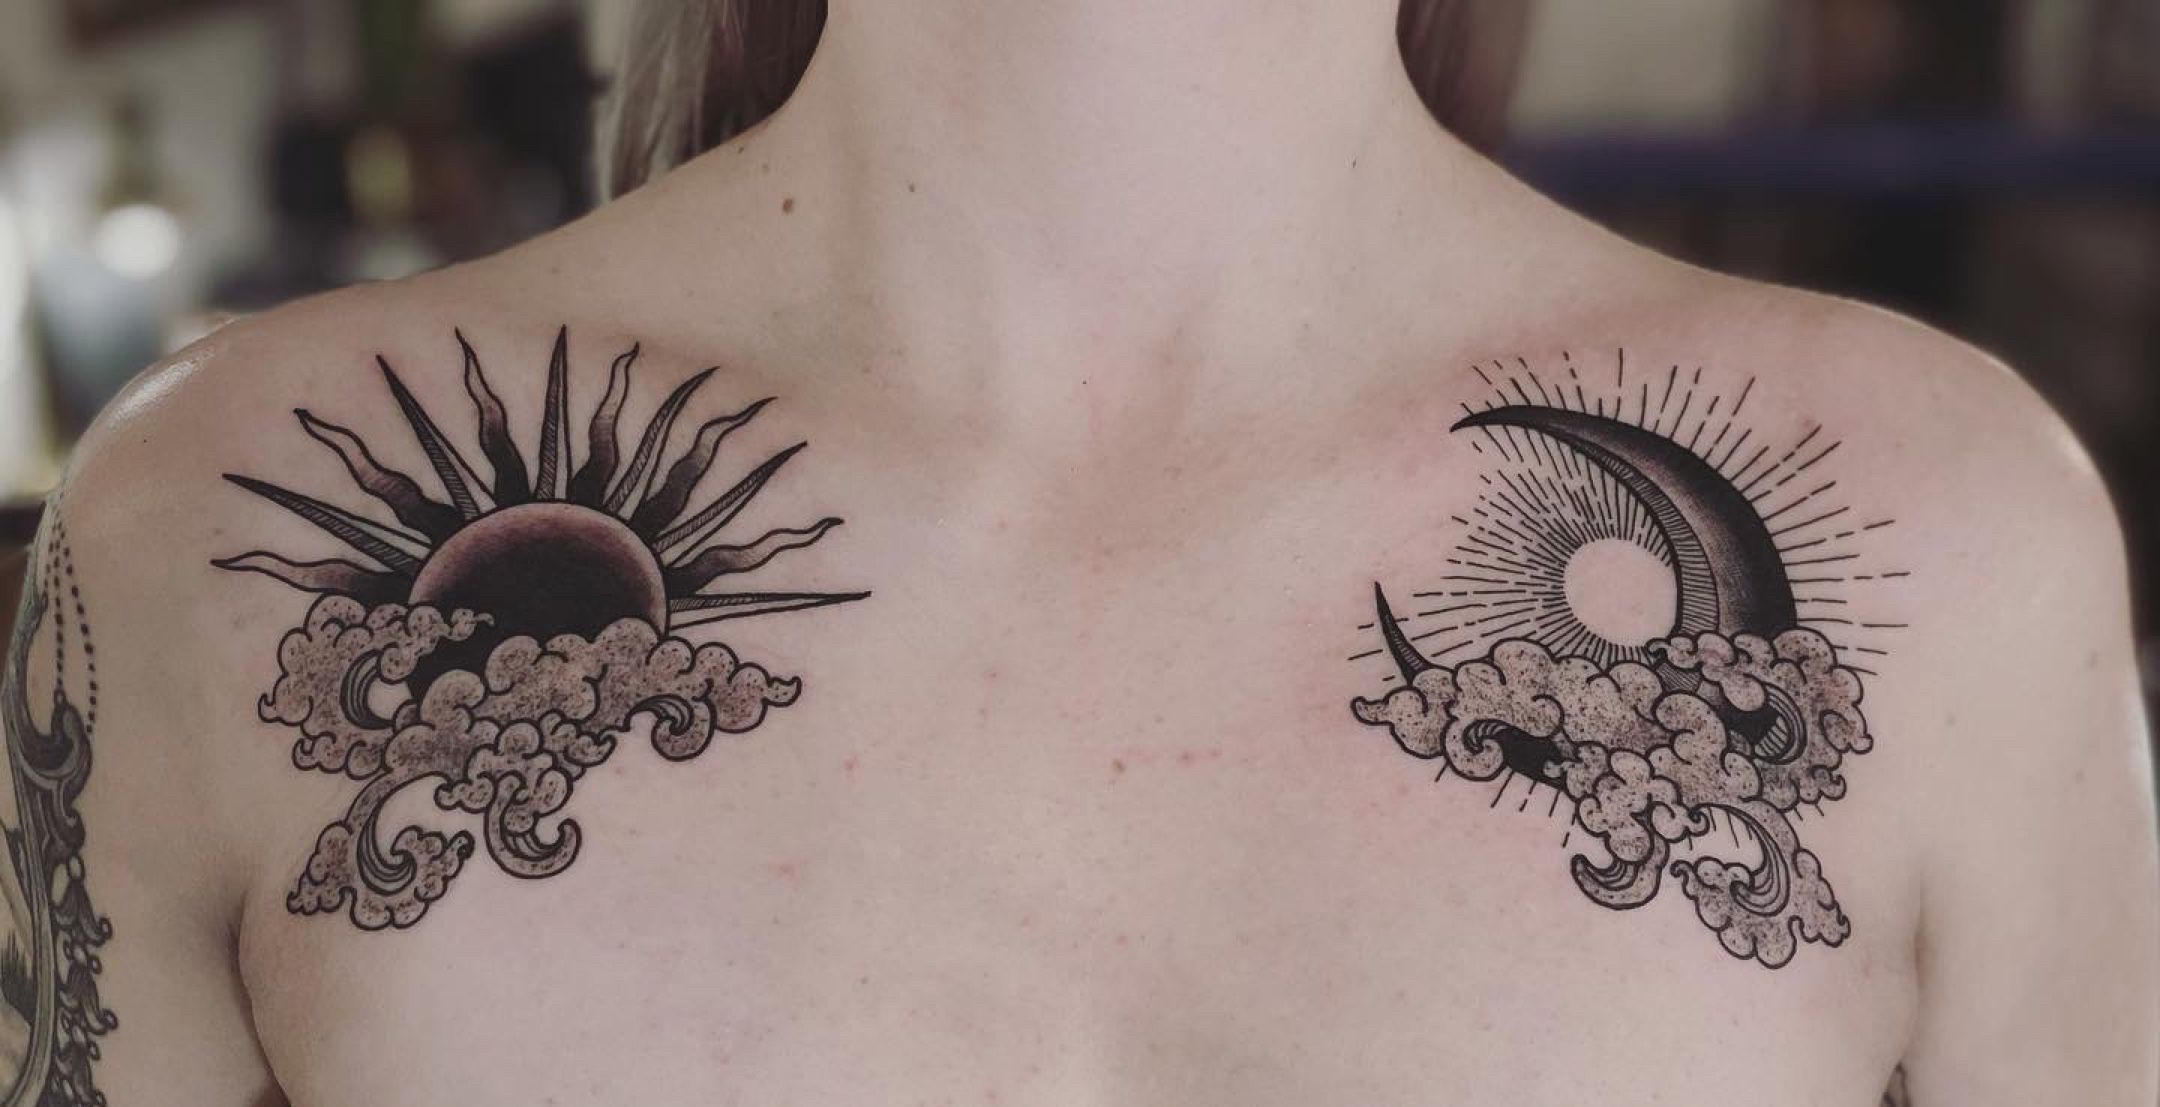 Tattoo uploaded by Sarah B Bolen • Sun and moon • Tattoodo